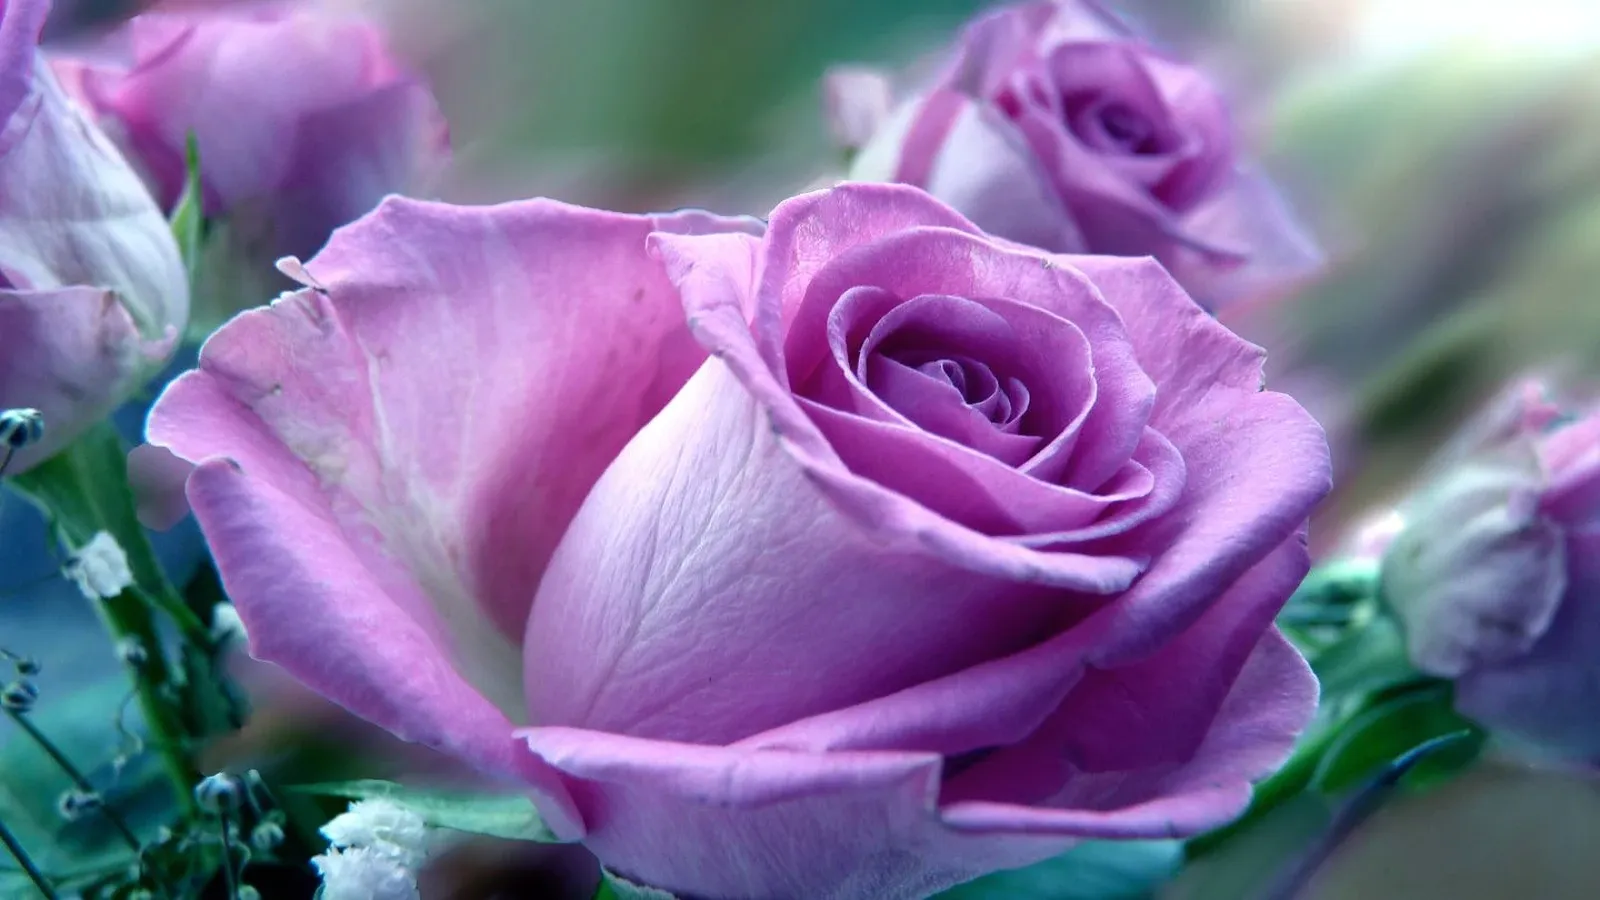 ল্যাভান্ডার গোলাপ ফুলের ছবি - Picture of lavender rose flower - গোলাপ ফুলের ছবি ডাউনলোড - বিভিন্ন রঙের গোলাপ ফুলের ছবি ডাউনলোড - rose flower - NeotericIT.com